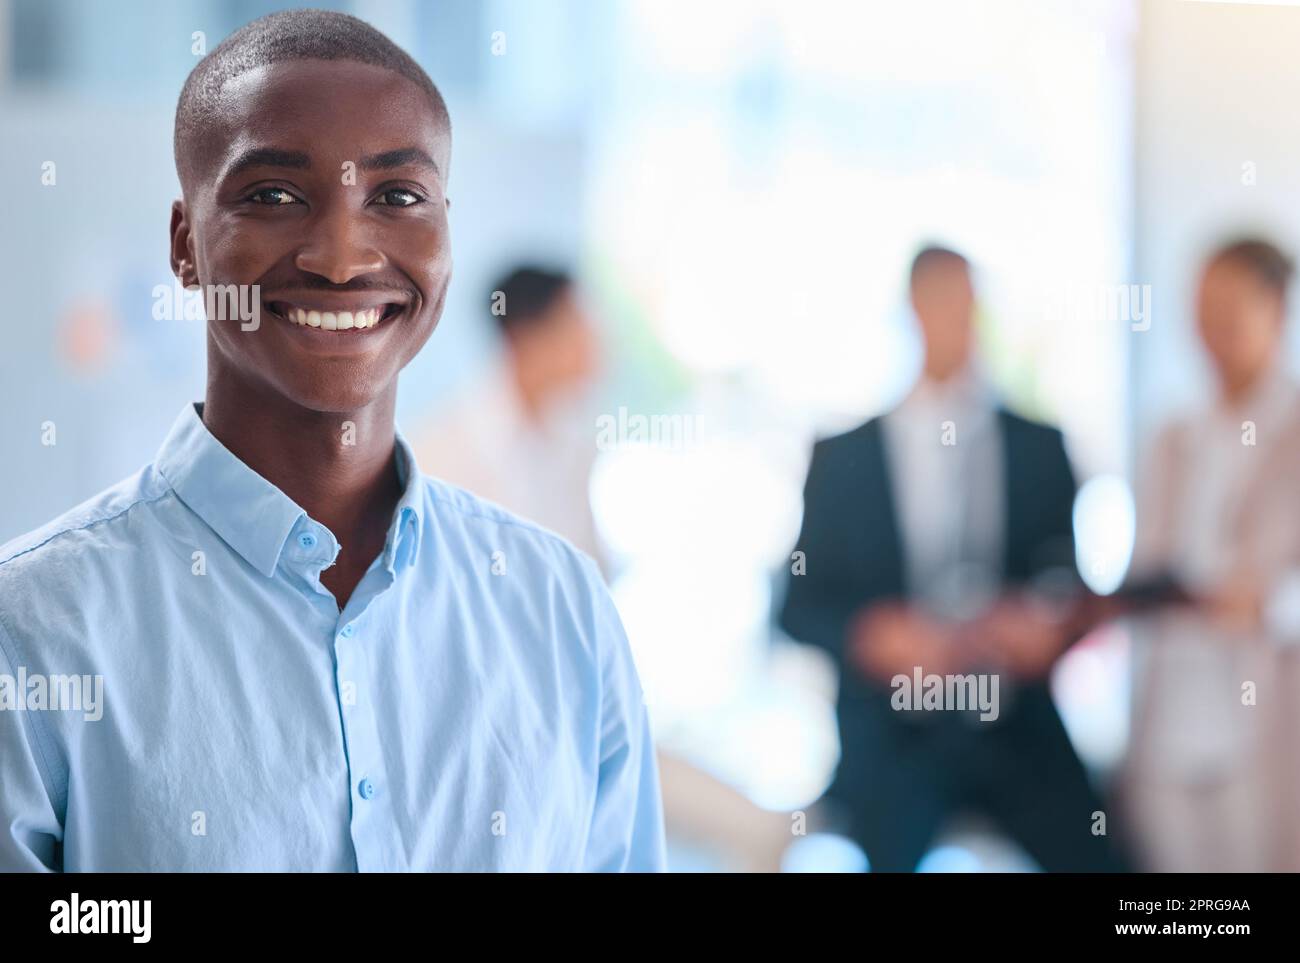 Portrait eines lächelnden Gesichts eines Geschäftsmanns, der in einer Firma arbeitet, der Leitung eines afrikanischen Geschäftsmanns, der sich im Büro trifft. Schwarzer Manager, Mitarbeiter oder Mitarbeiter, der stolz auf Start-up und Teamwork ist Stockfoto